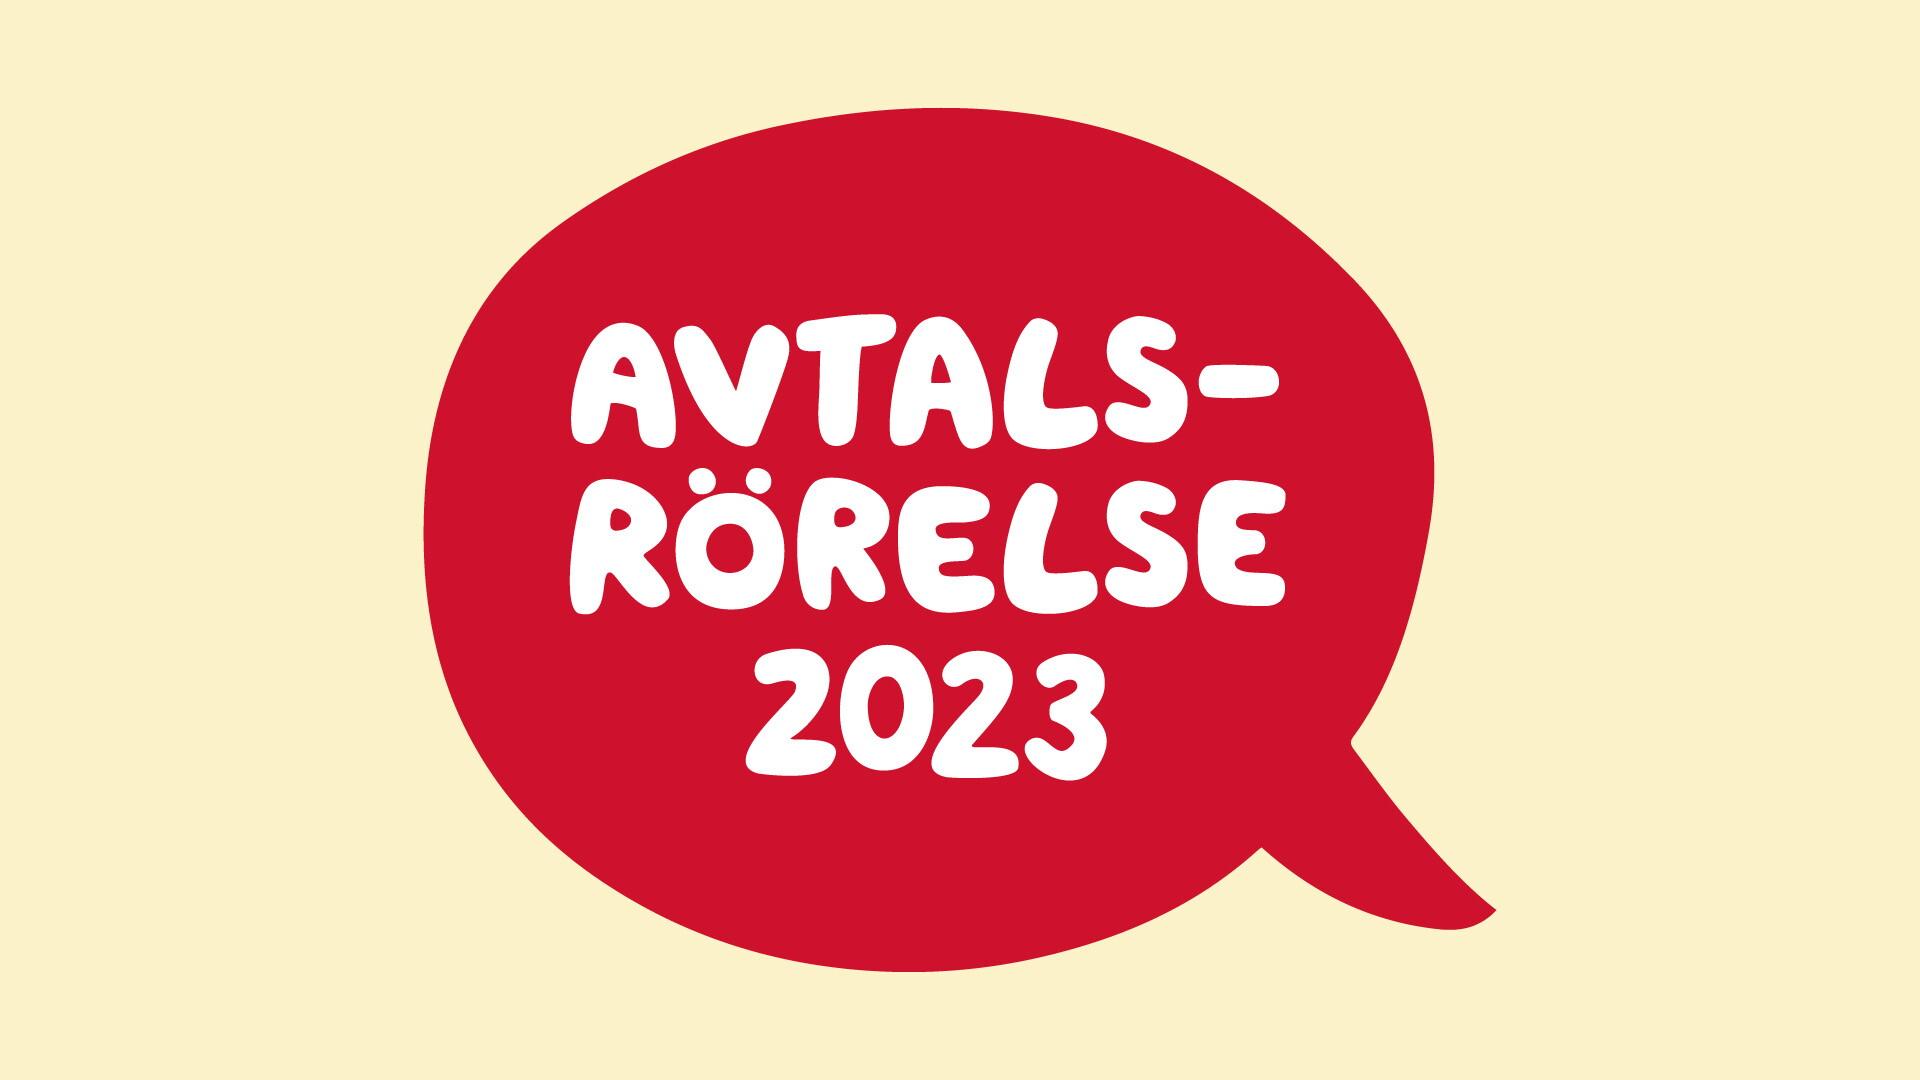 Röd pratbubbla med texten "Avtalsrörelse 2023".